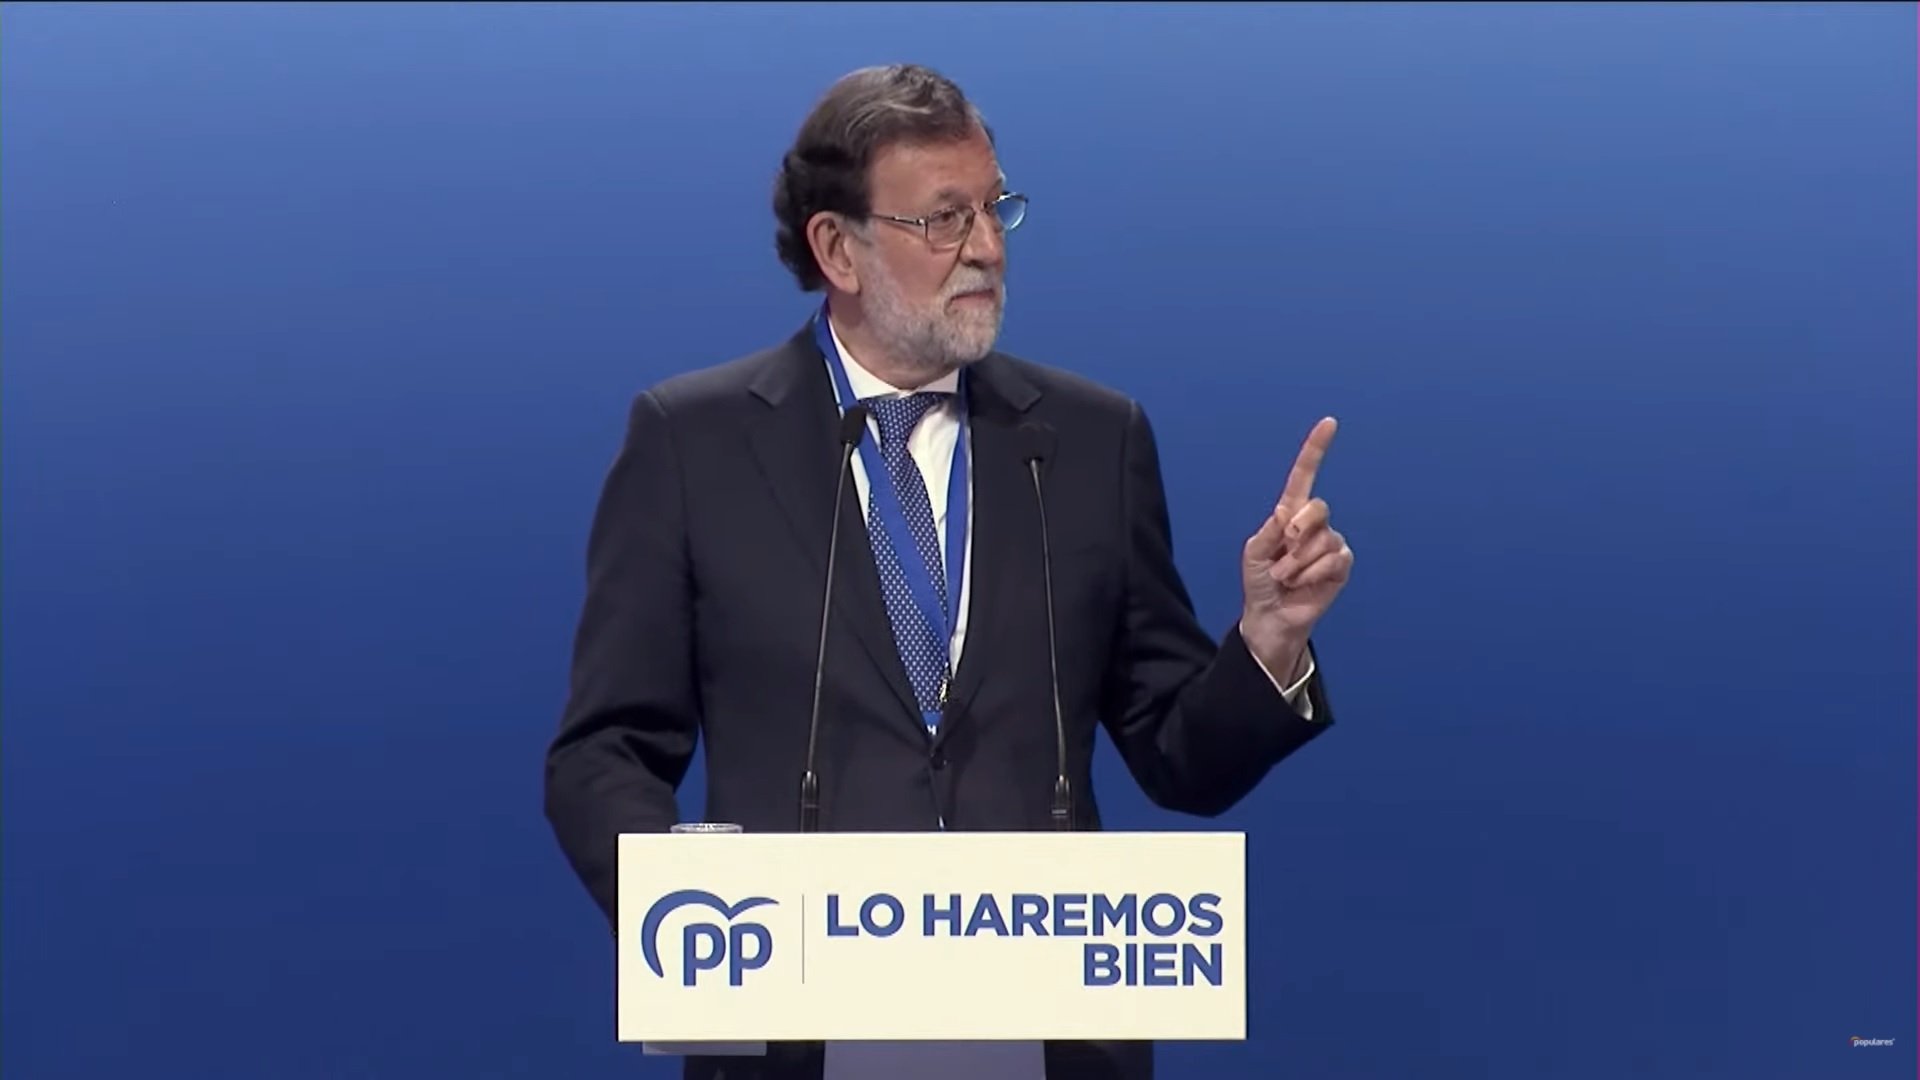 Andorra indicts ex-Spanish PM Rajoy as defendant over Catalonia espionage case